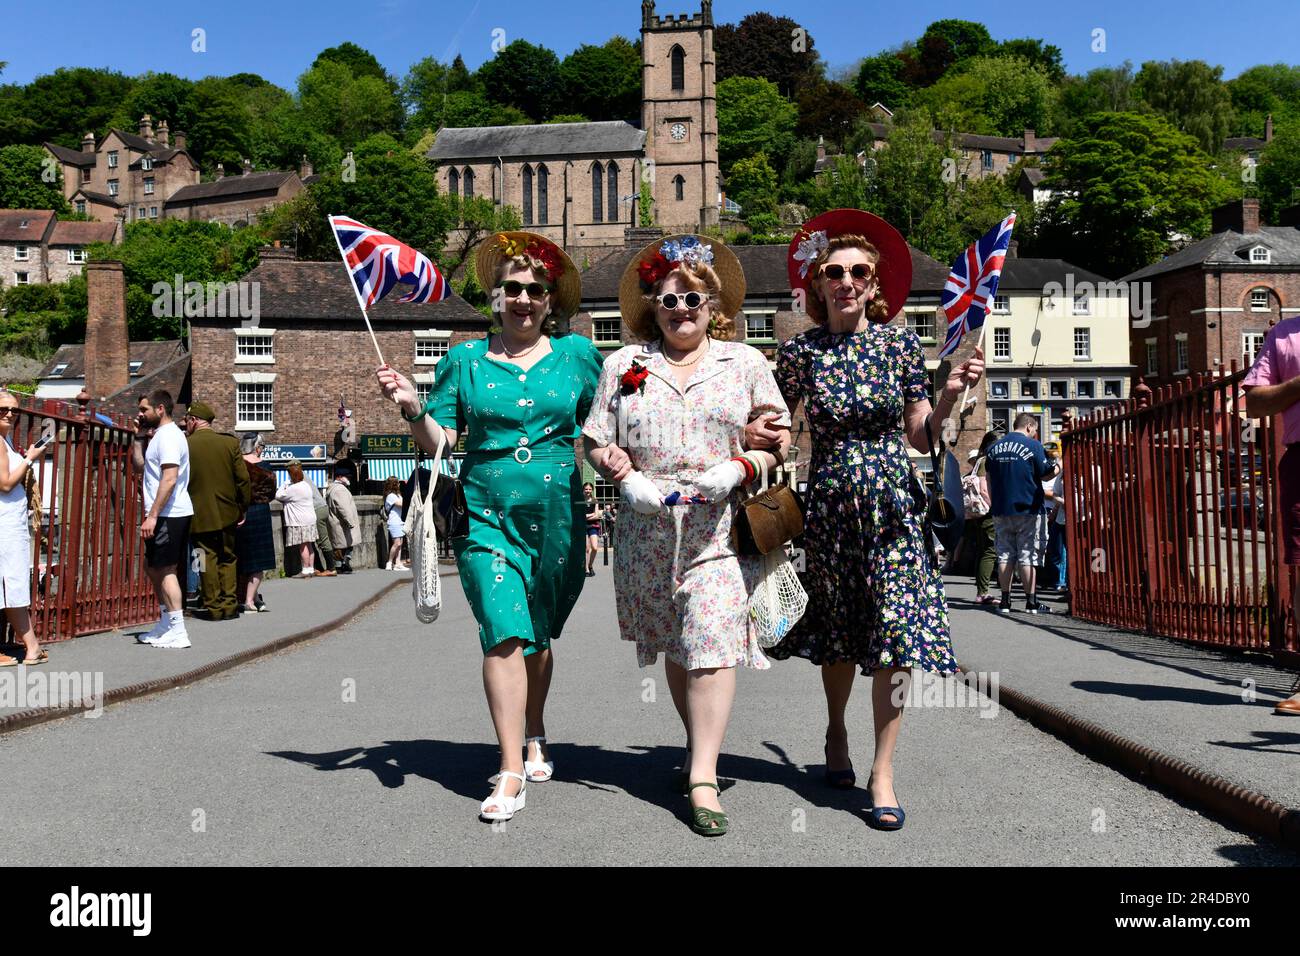 Das Ironbridge World War Two Weekend. Schwestern im Stil der 1940er Jahre, die über die weltweit erste Ironbridge spazieren. Nachstellung WW2 2. Weltkrieg Kostümkleid Damen Credit Dave Bagnall Stockfoto